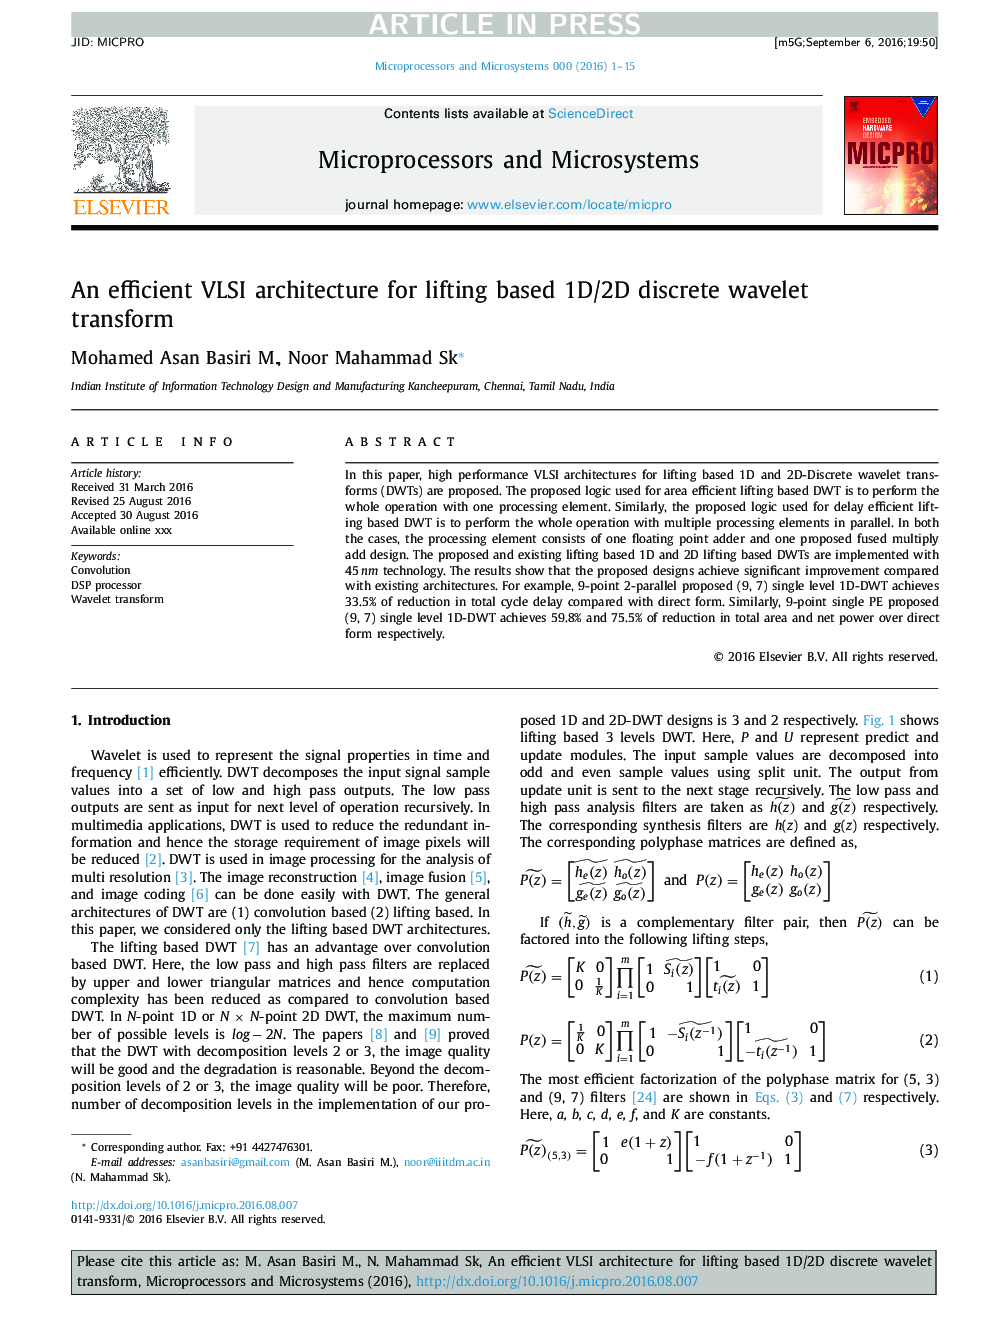 An efficient VLSI architecture for lifting based 1D/2D discrete wavelet transform